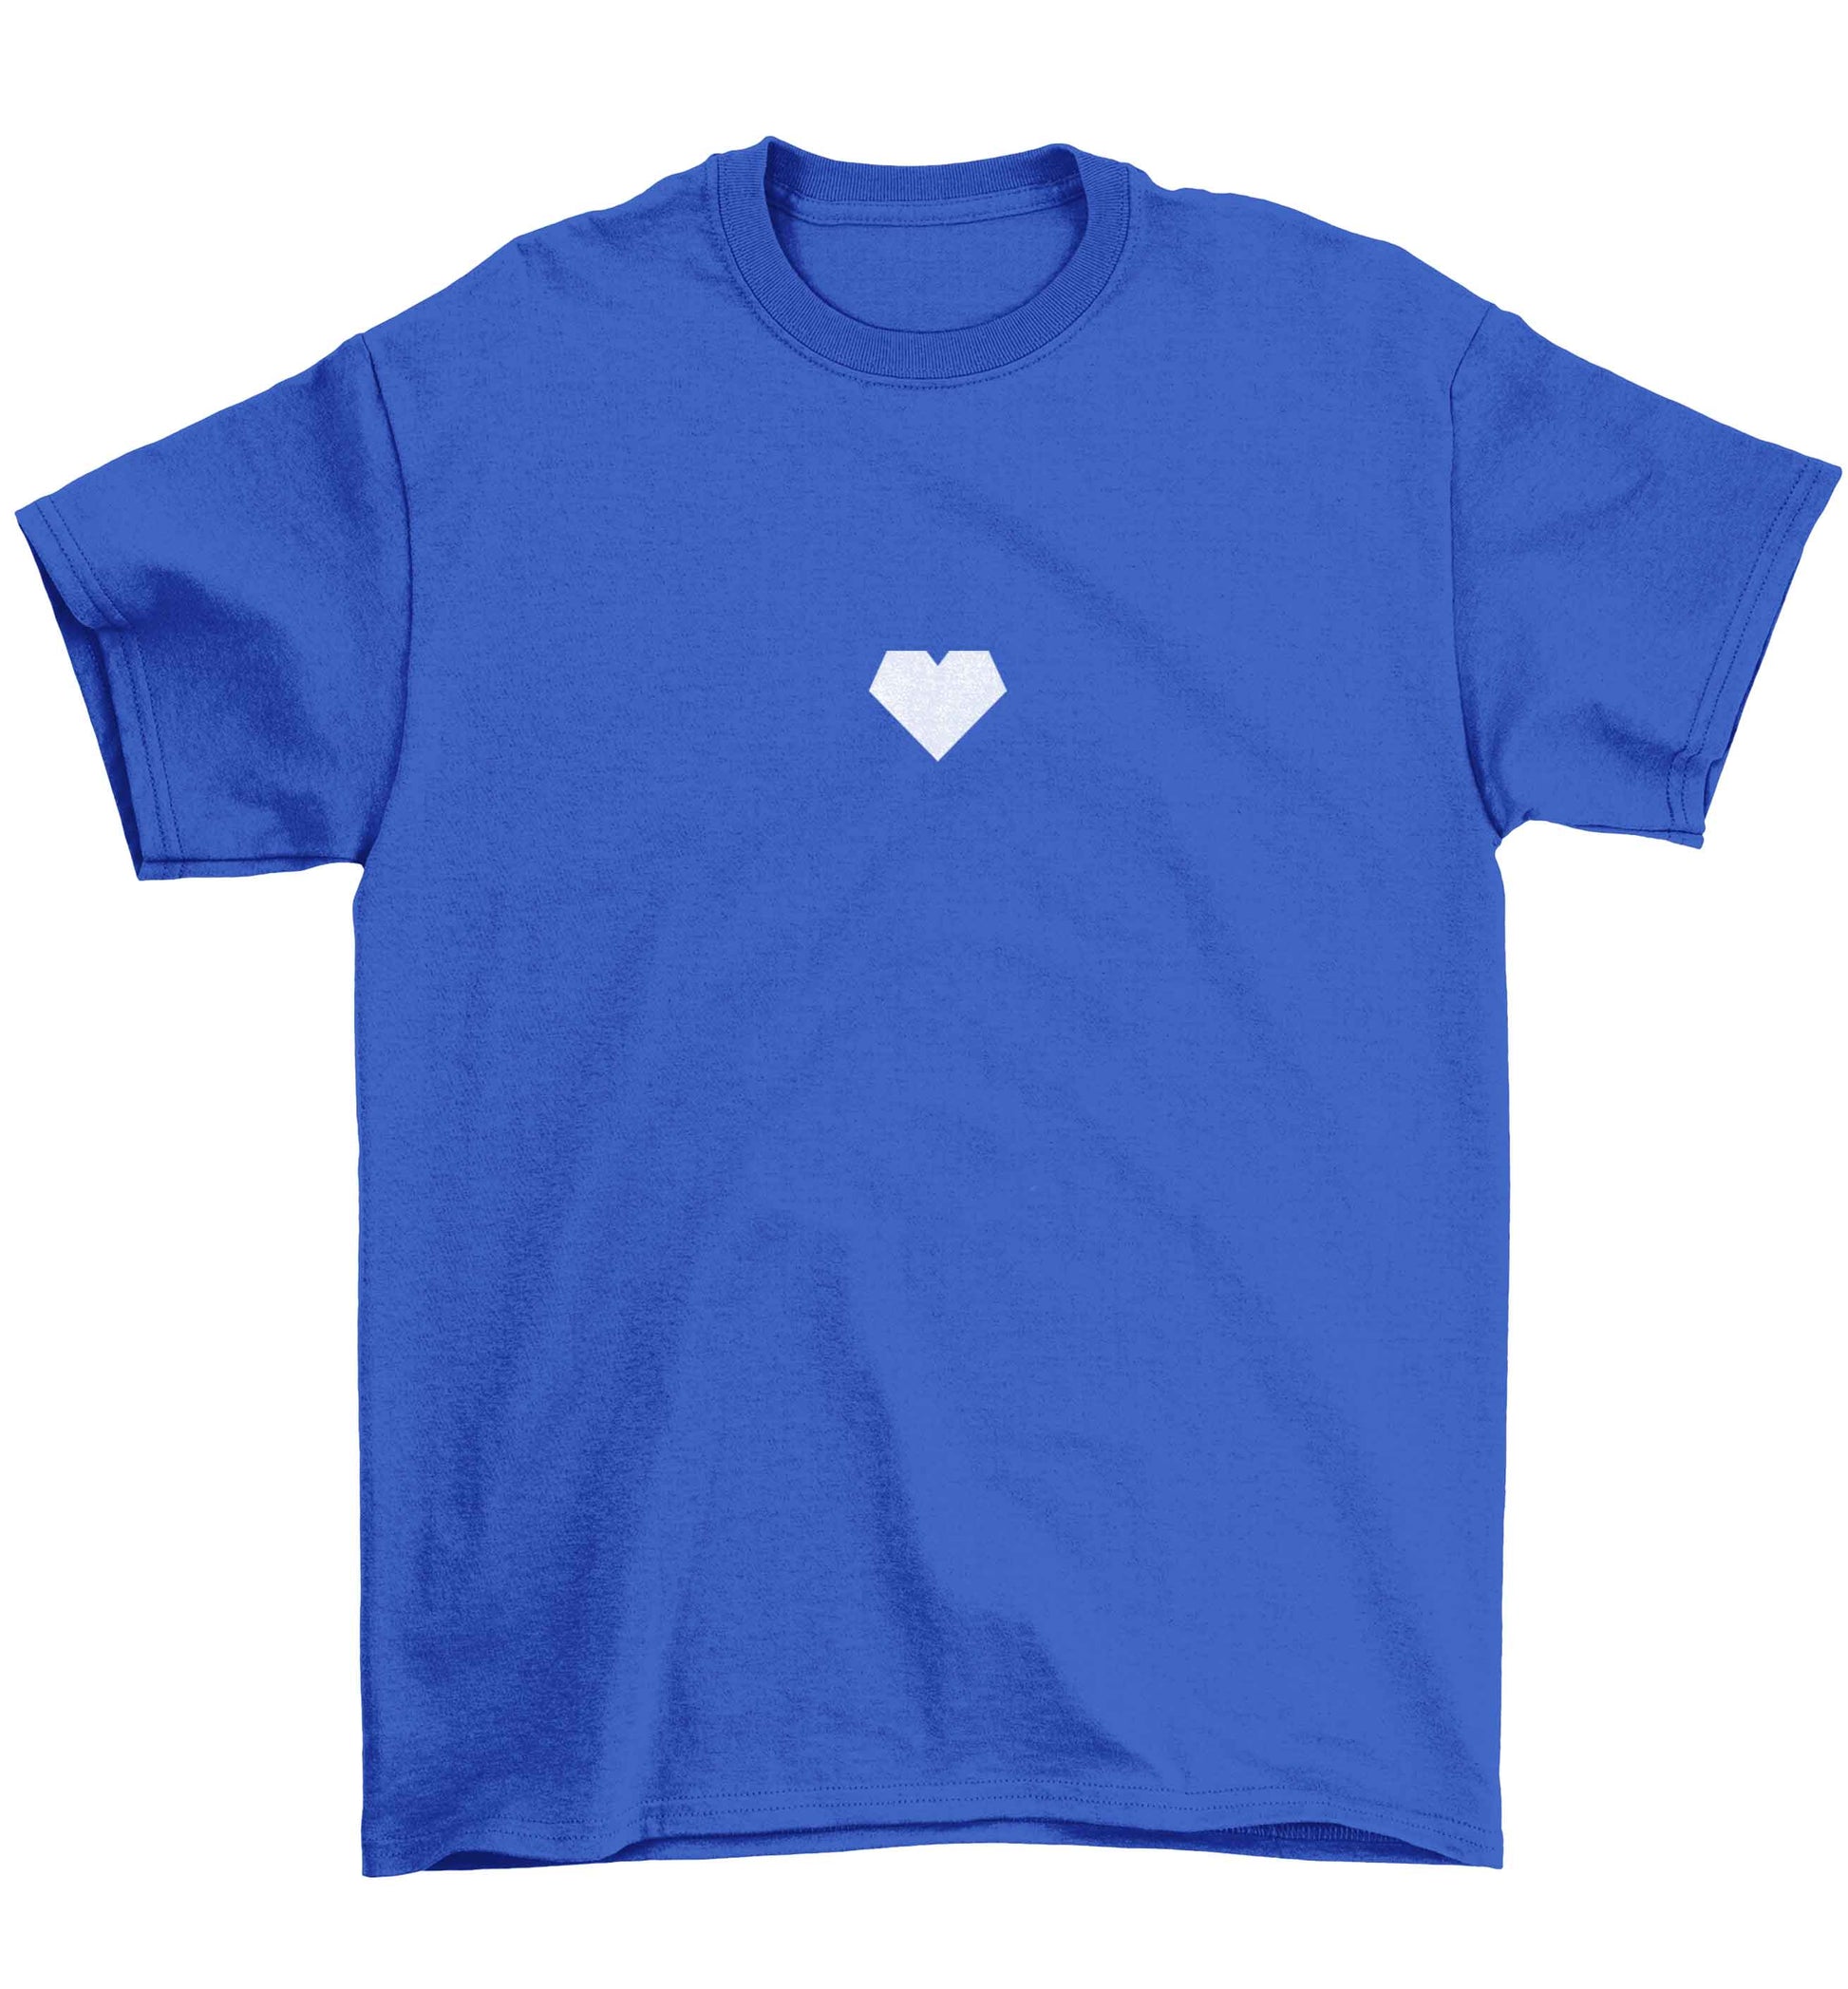 Tiny heart Children's blue Tshirt 12-13 Years